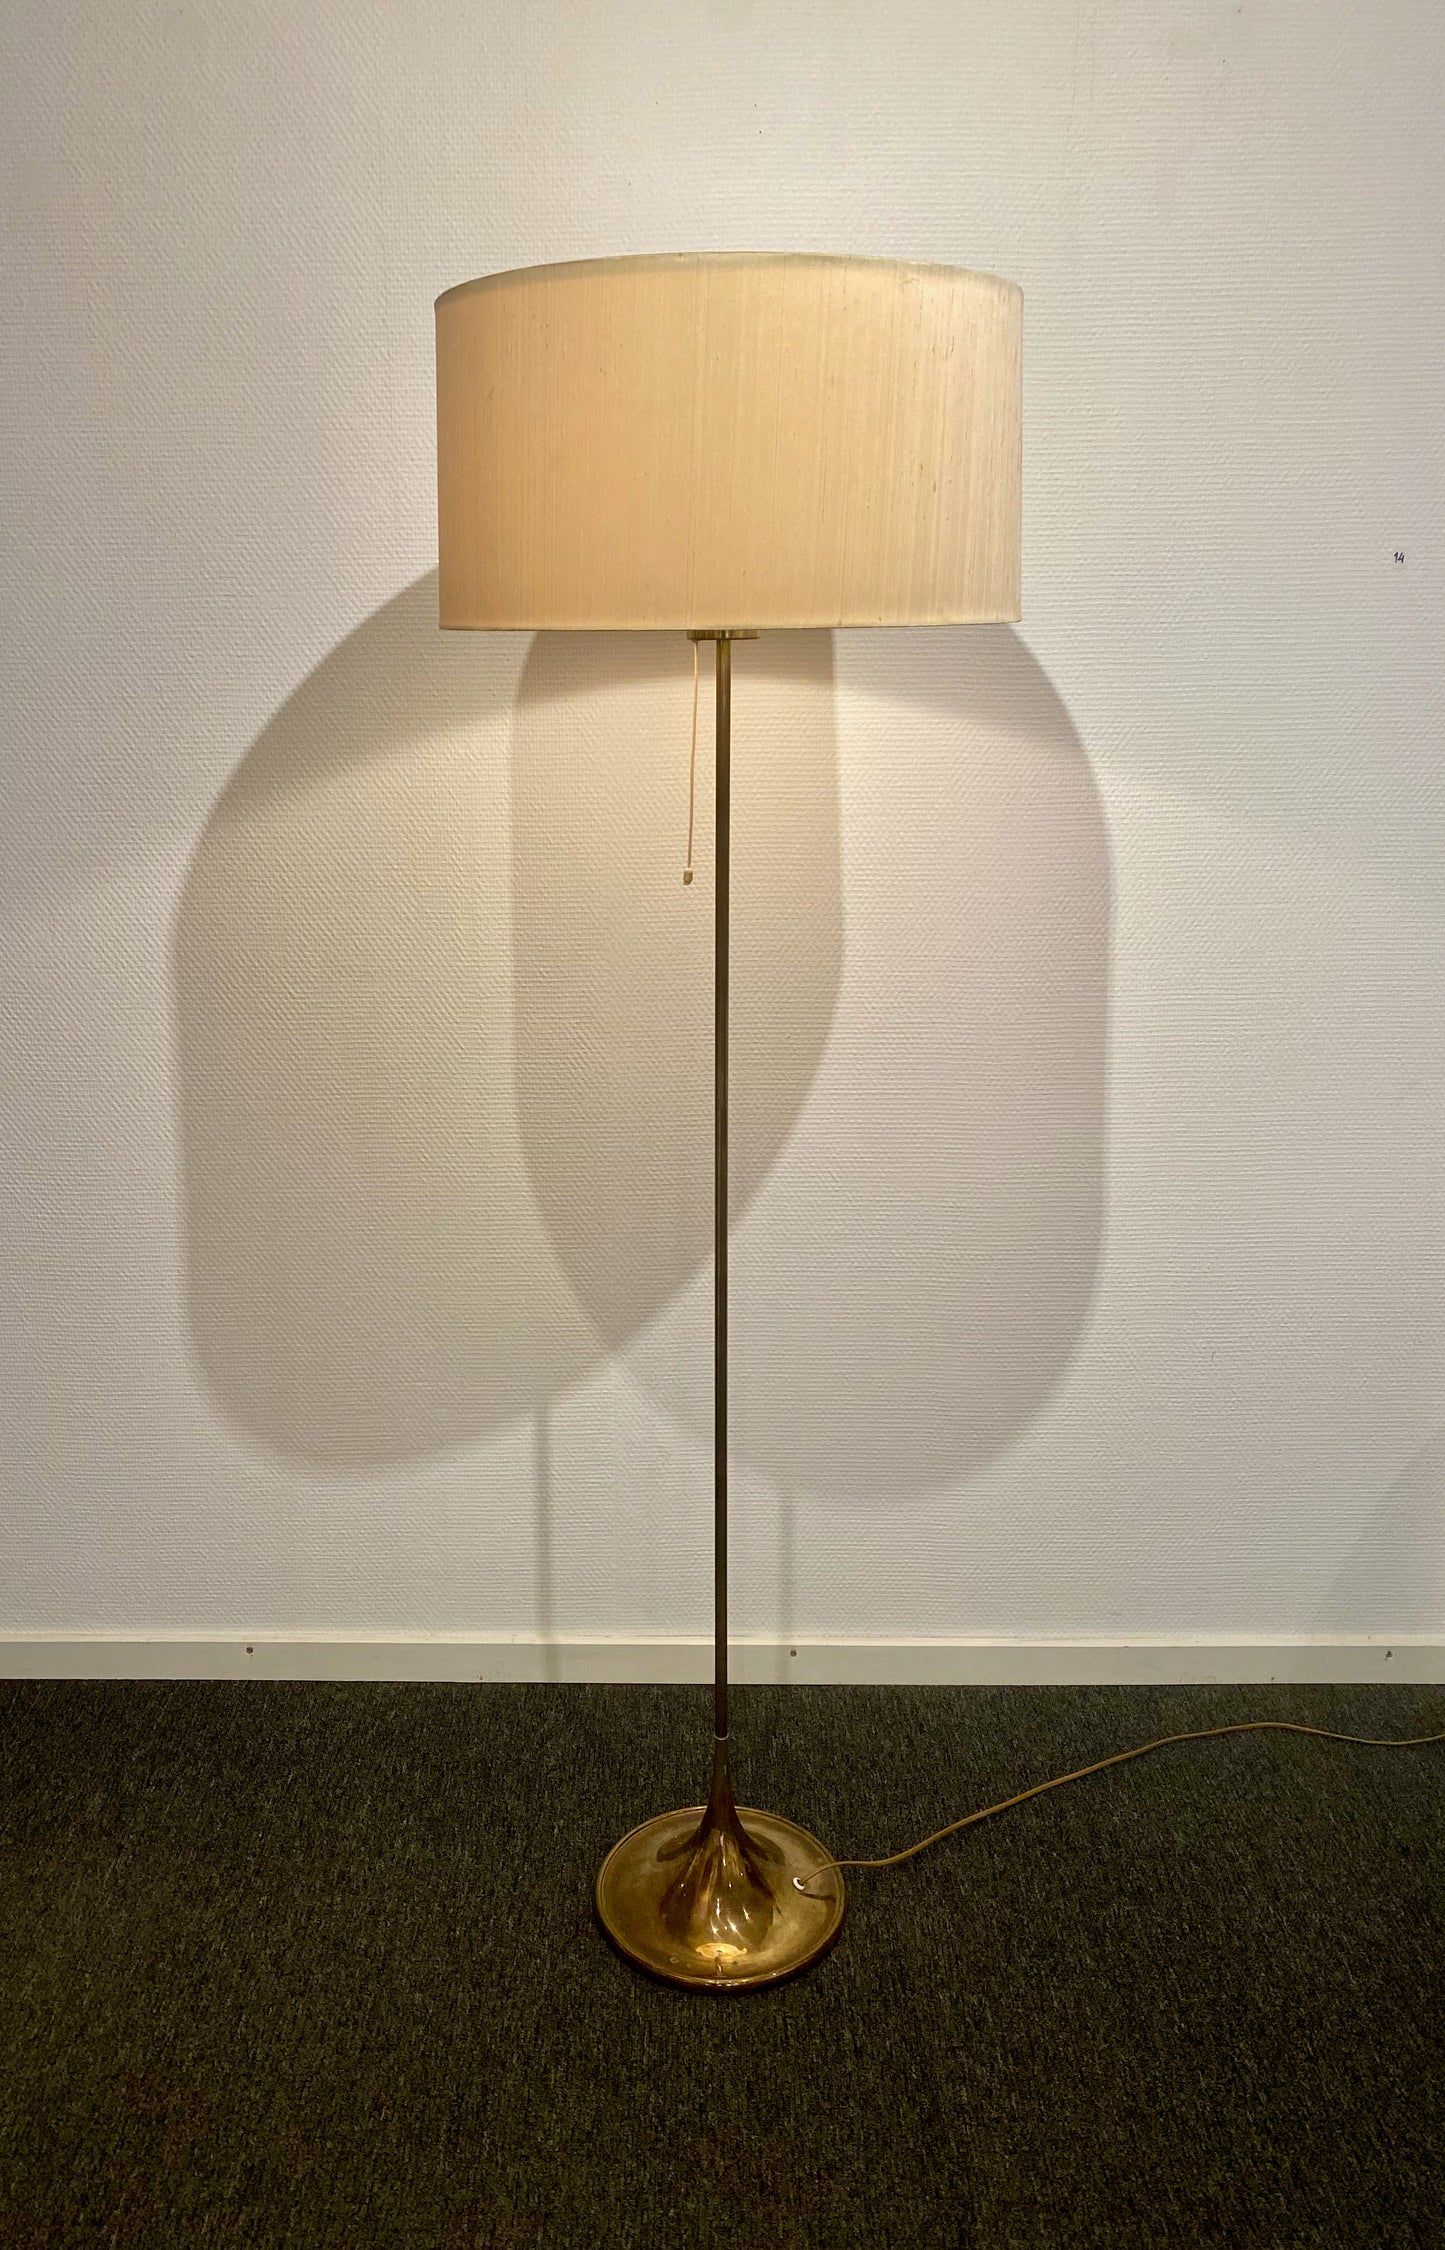 Bergboms -Brass floor lamp model G-024